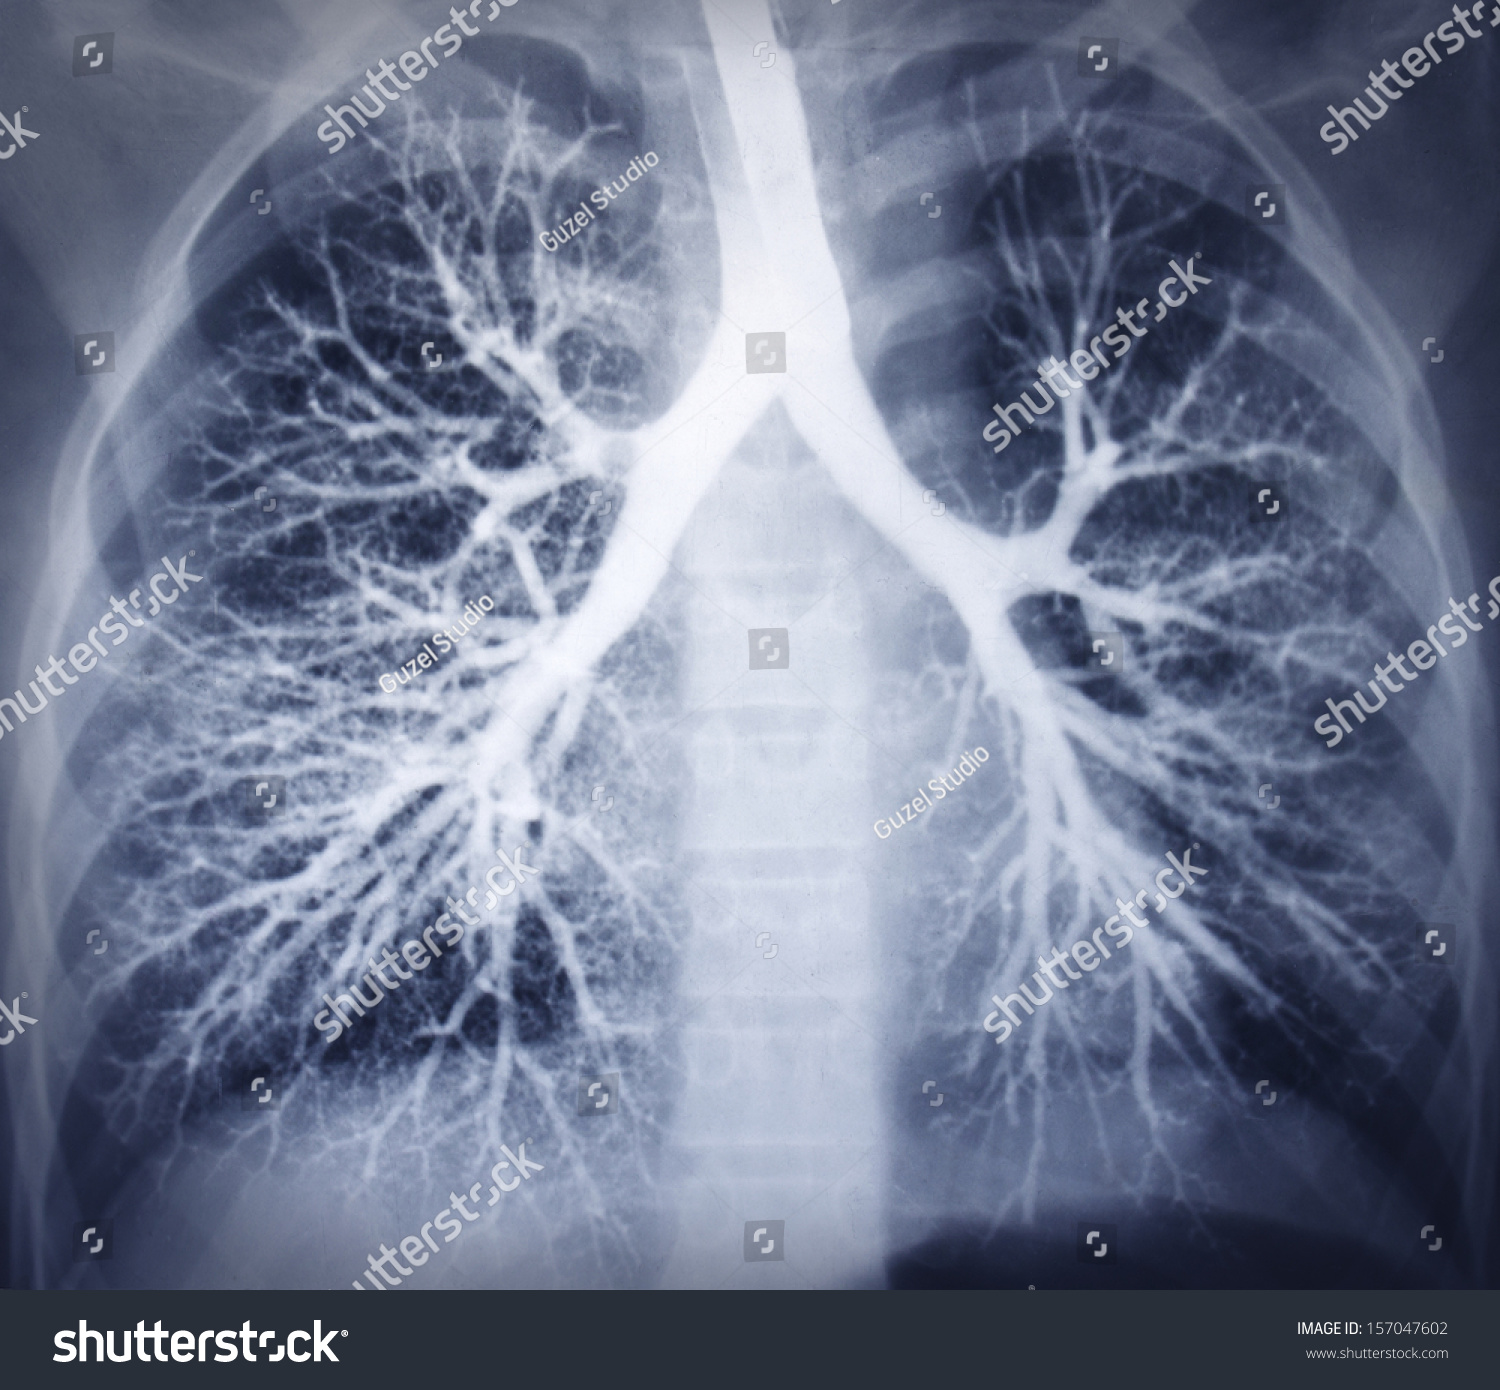 支气管镜检查图像。胸部x光片。健康的肺-医疗